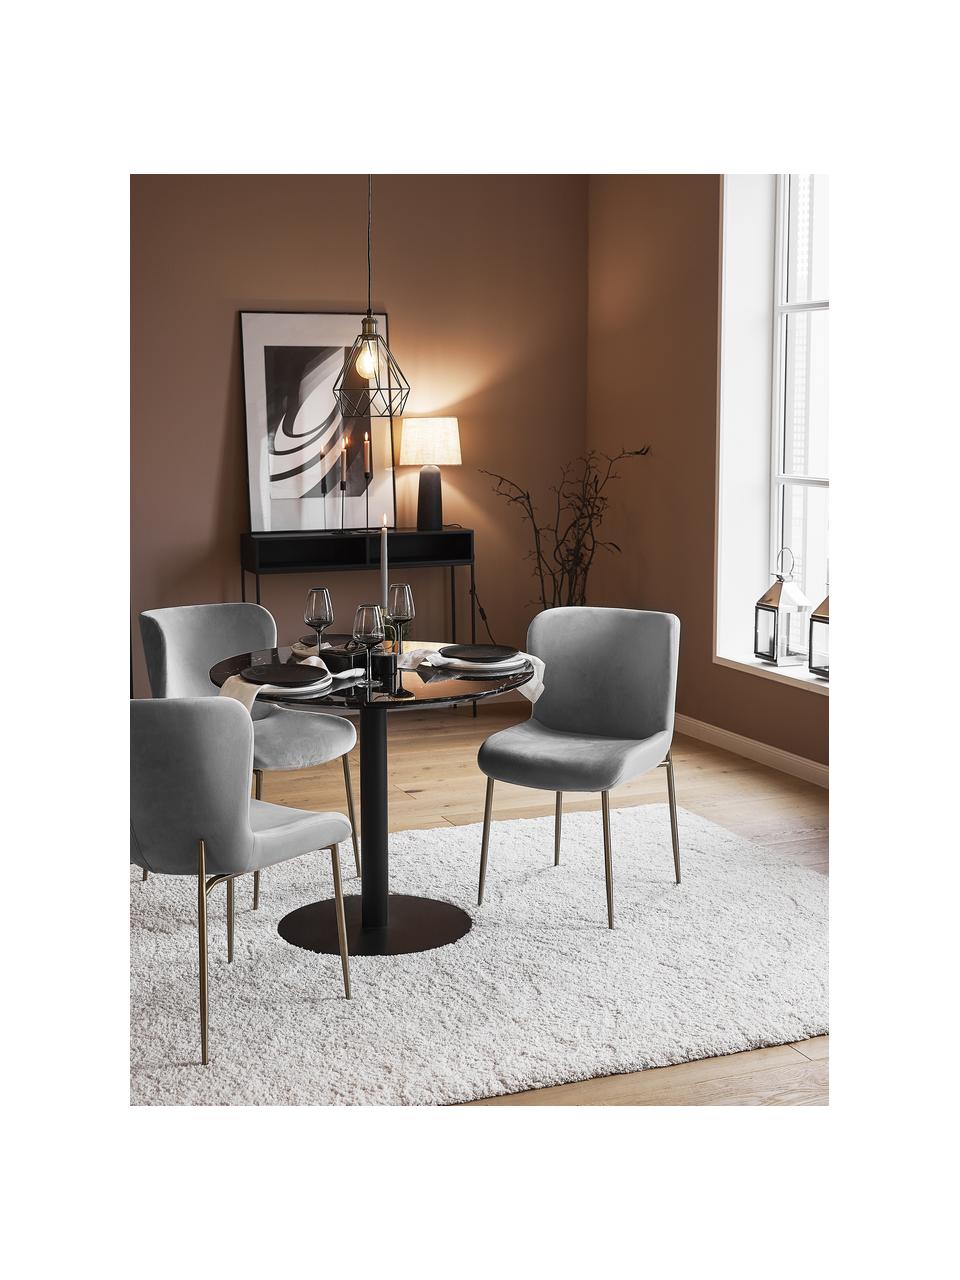 Fluwelen stoel Tess in grijs, Bekleding: fluweel (polyester), Poten: gepoedercoat metaal, Fluweel grijs, goudkleurig, B 49 x D 64 cm